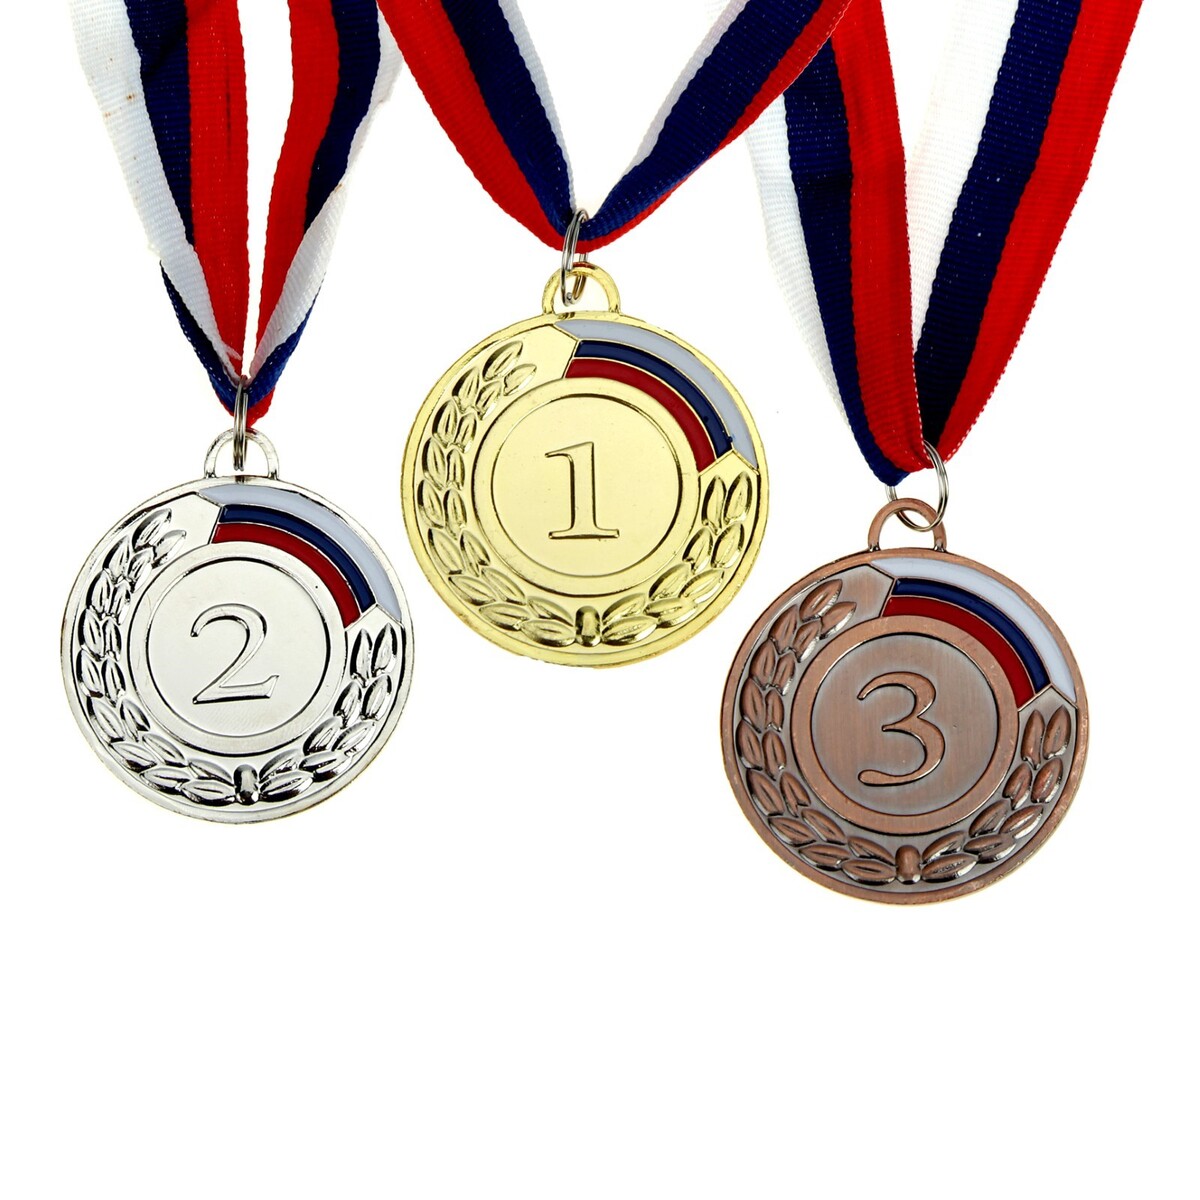 Медаль призовая 002 диам 5 см. 1 место, триколор. цвет зол. с лентой 3 ряд 17 место